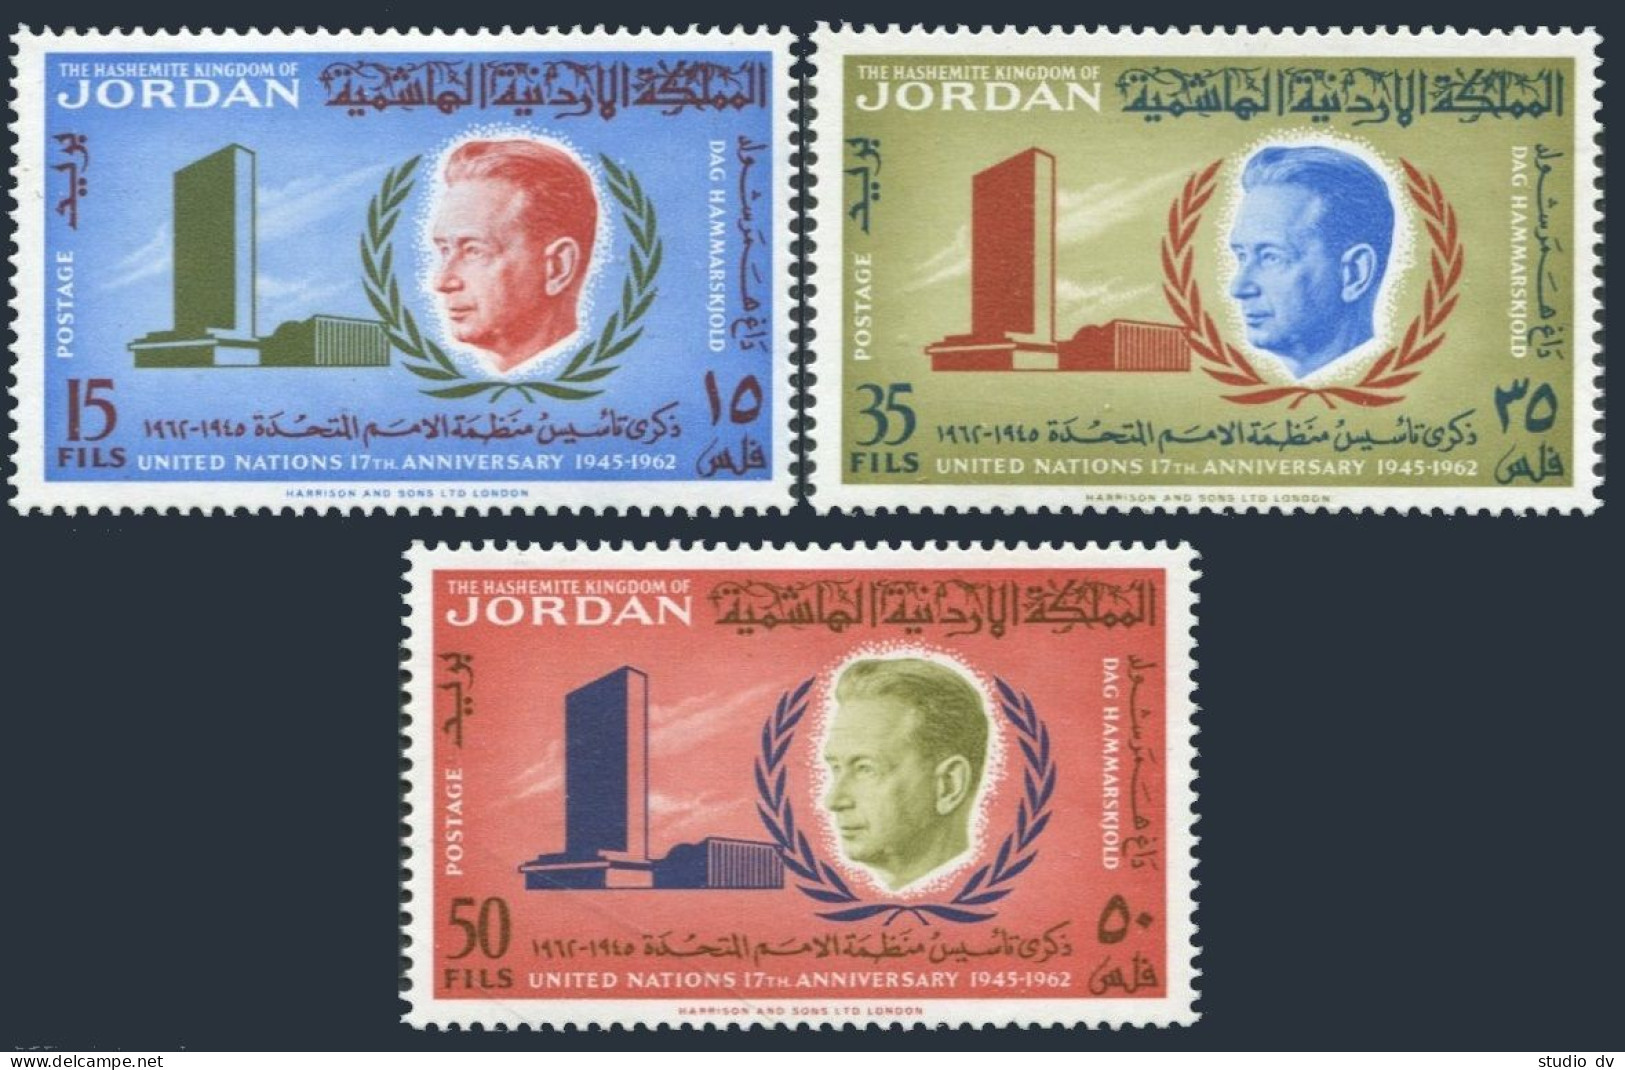 Jordan 385-387,387a, MNH. Mi 375-377,Bl.3. Dag Hammarskjold,UN Headquarters,1963 - Jordanien